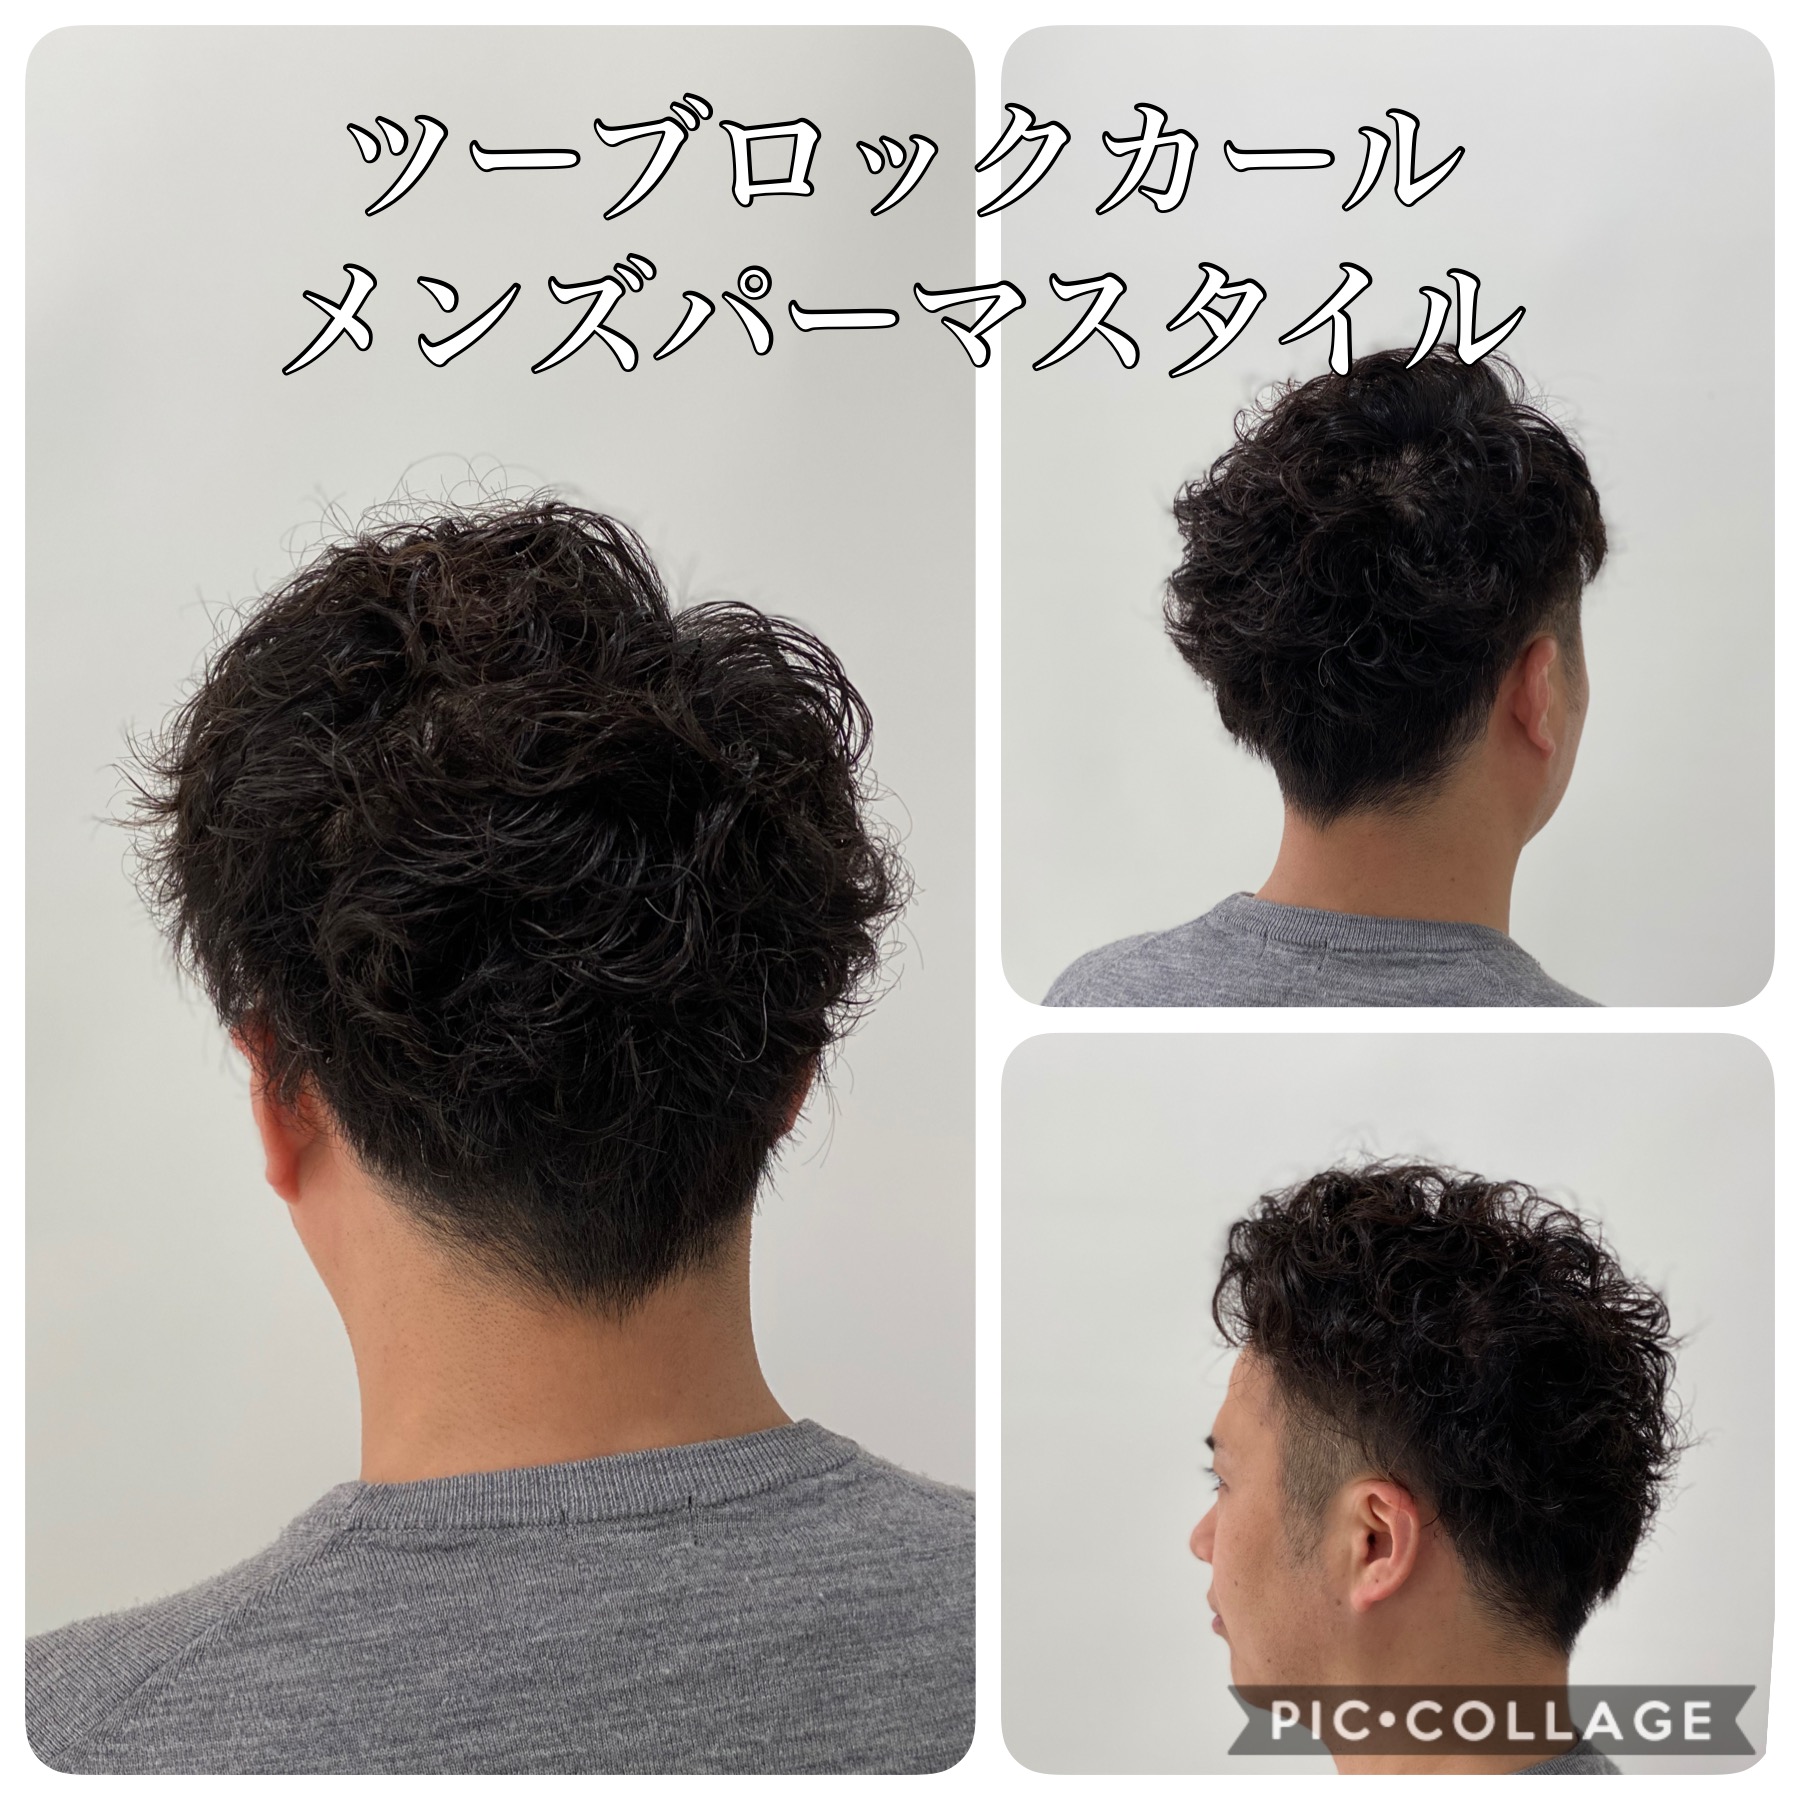 メンズパーマスタイル ツーブロックでメリハリショートに サッカー人 柴田卓 のヘアケア美容師 ライフプランニングblog